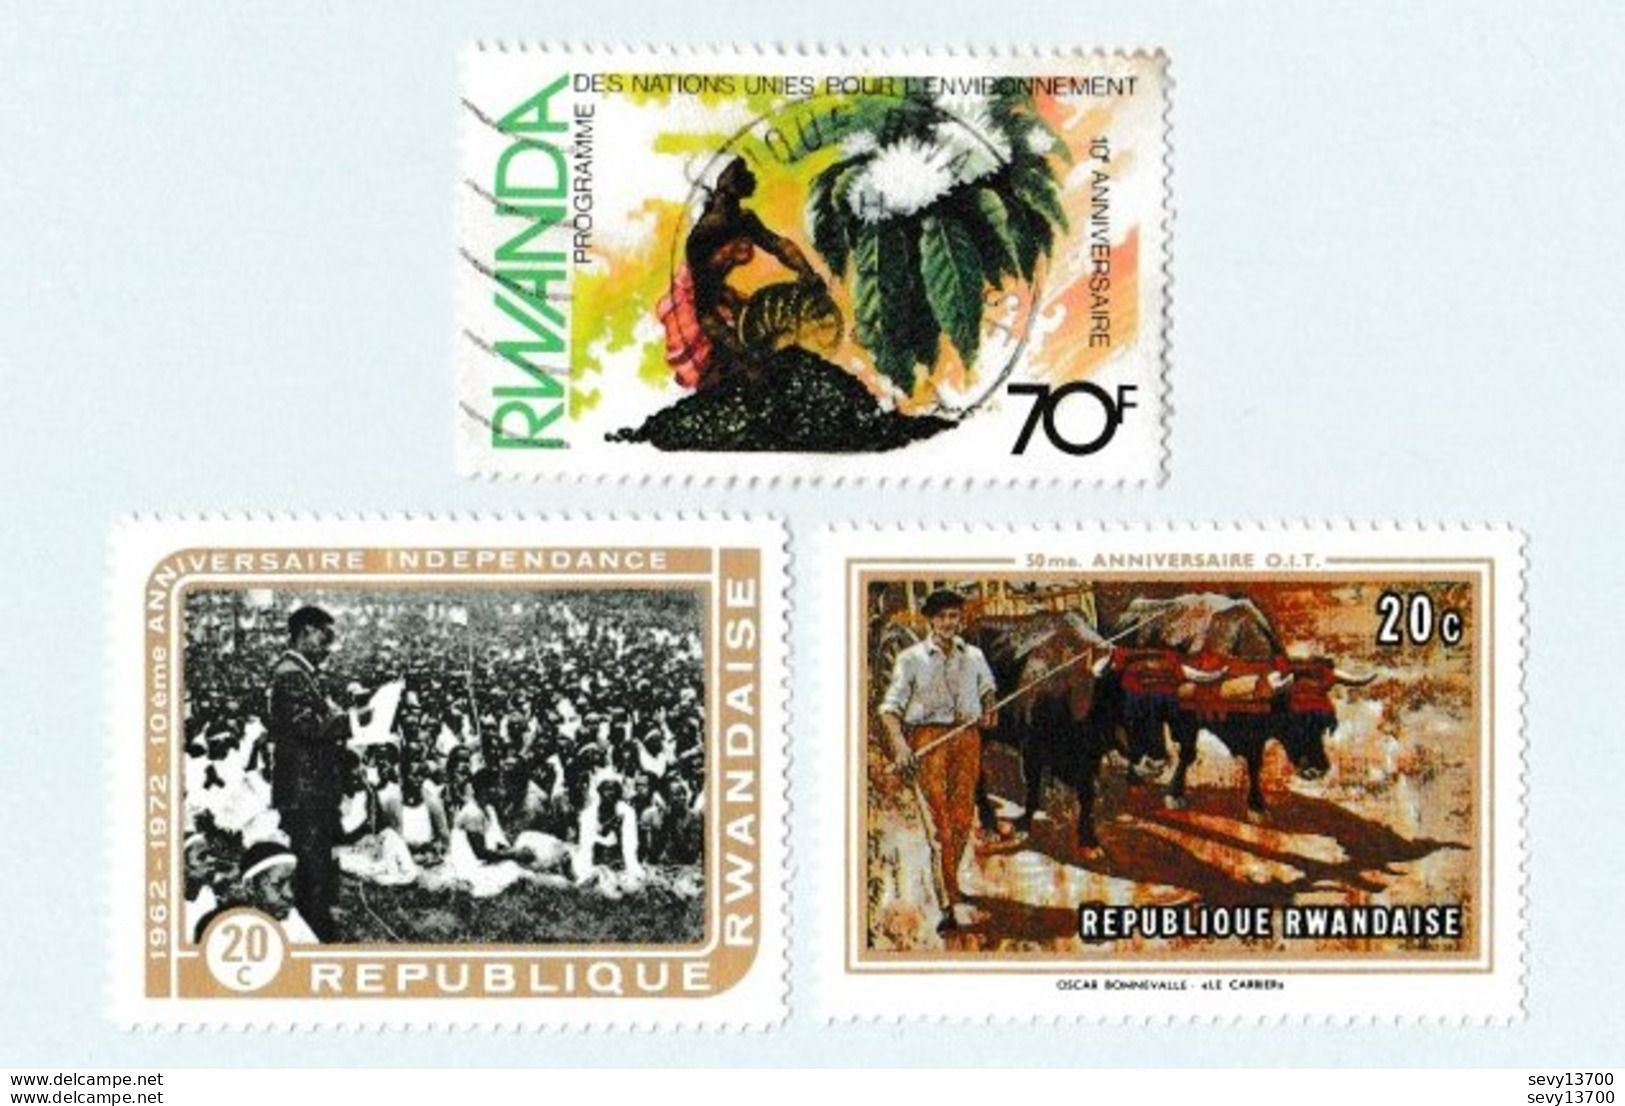 République Rwandaise lot de 24 timbres dont 23 neufs